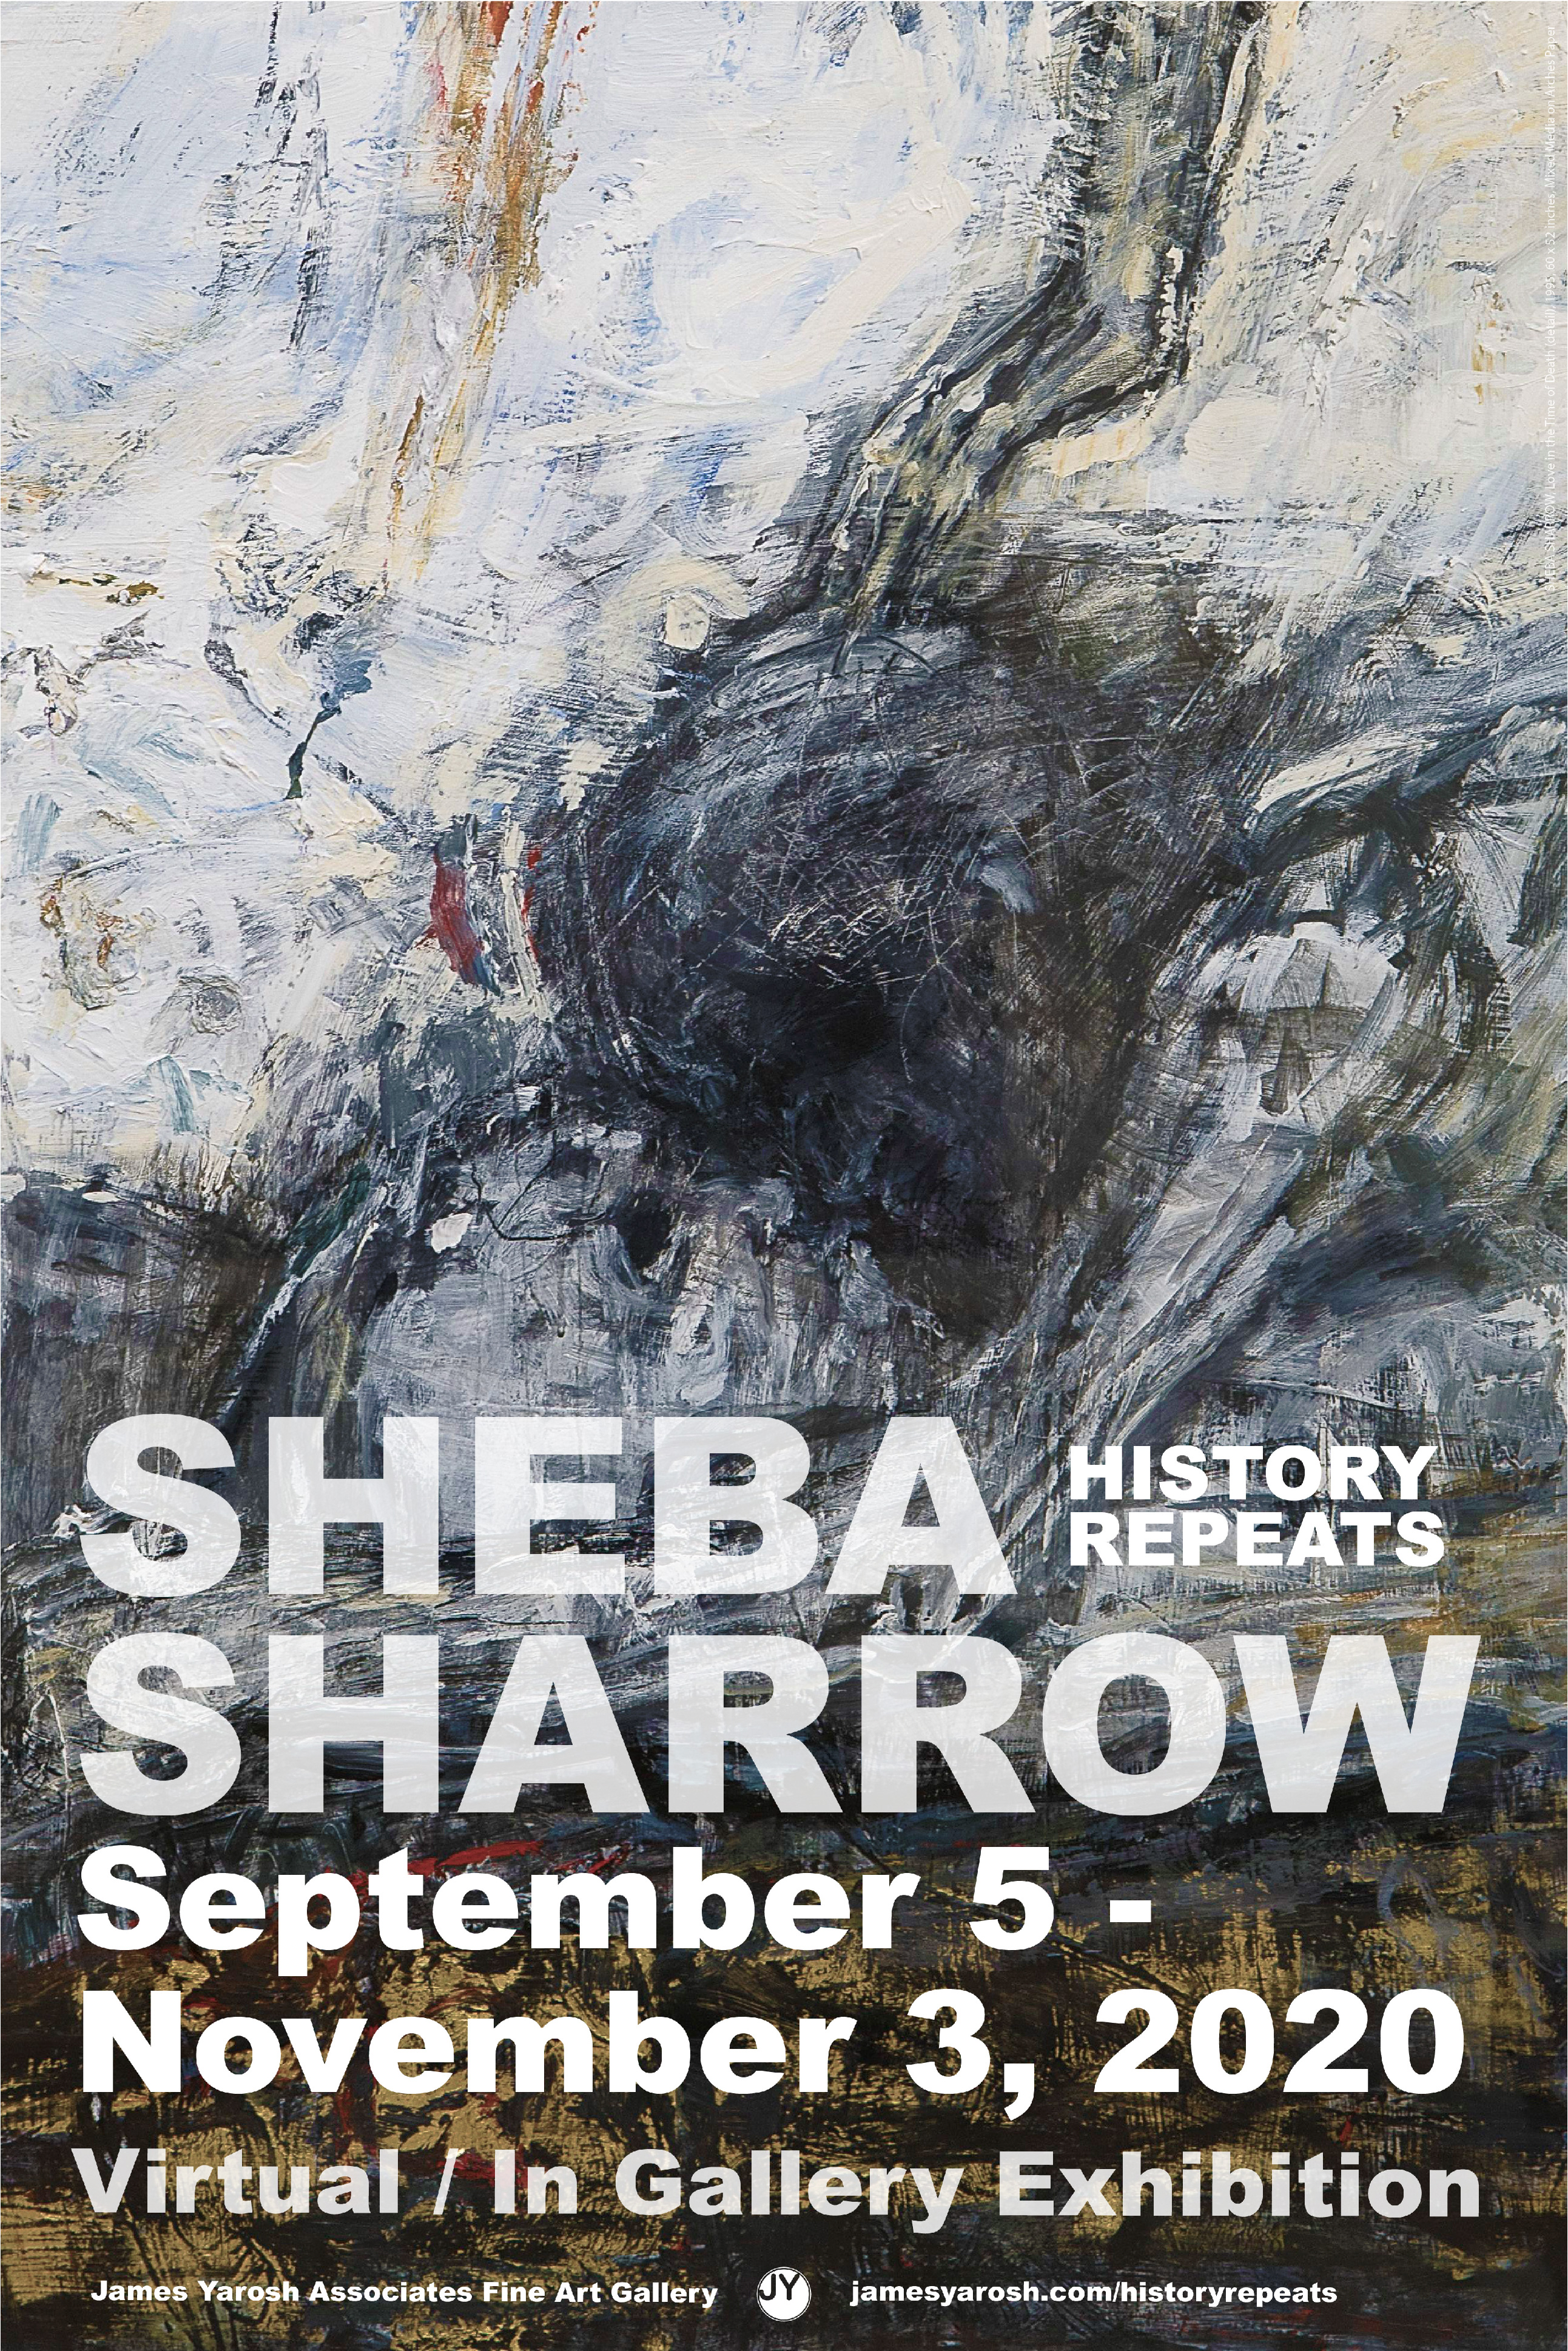 SHeba Sharrow History repeats [Recovered]-25